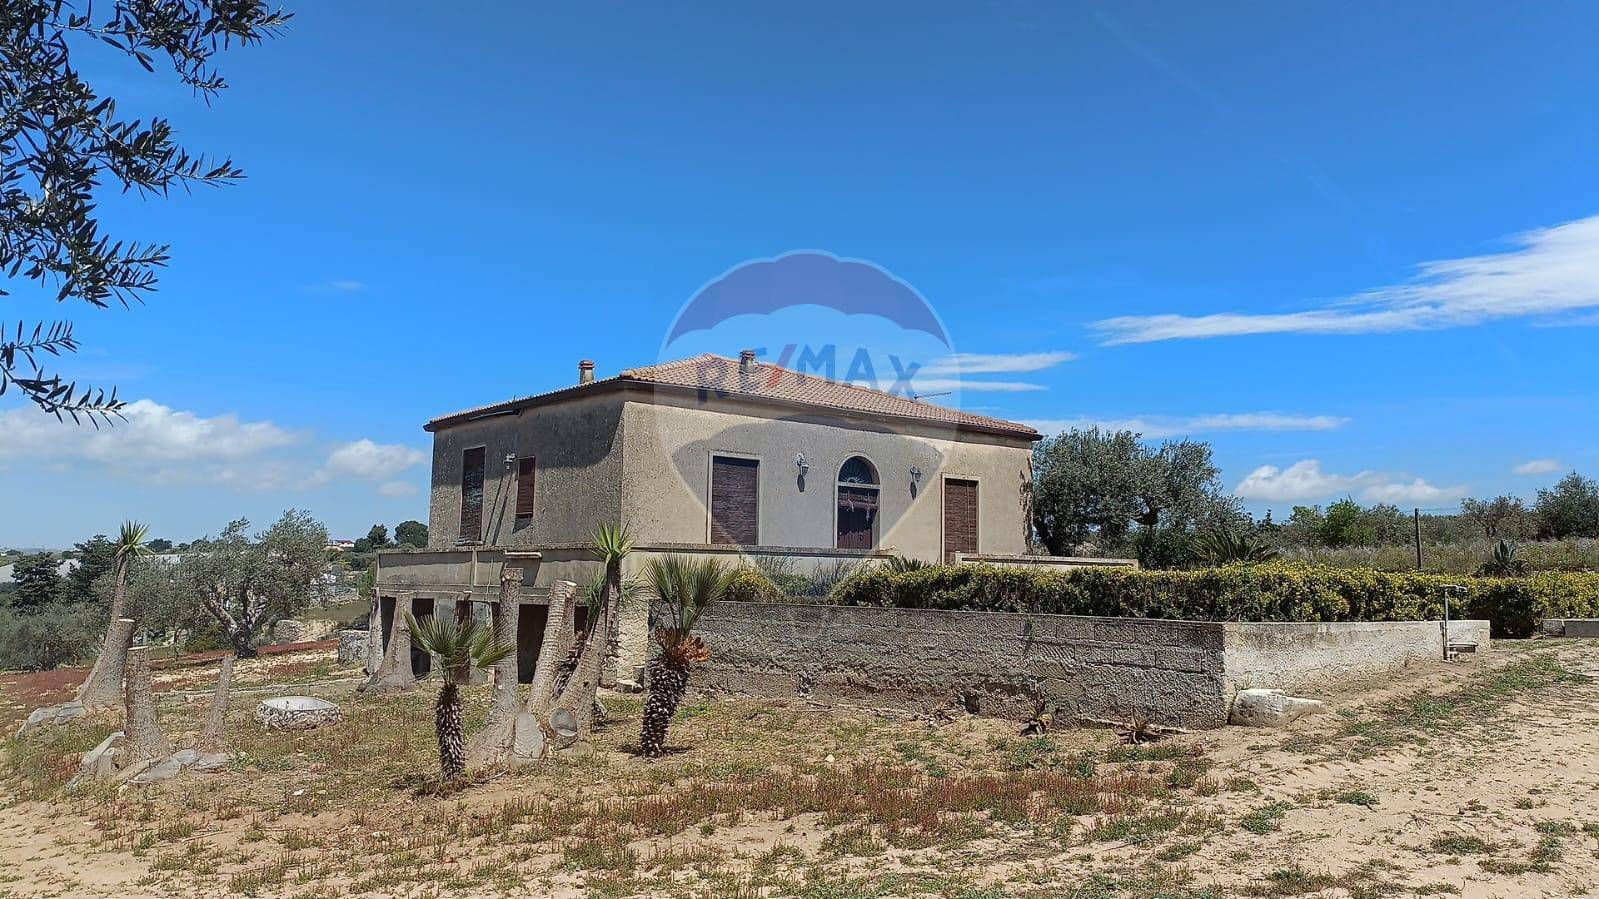 Villa in vendita a Chiaramonte Gulfi, 5 locali, zona Zona: Roccazzo, prezzo € 120.000 | CambioCasa.it